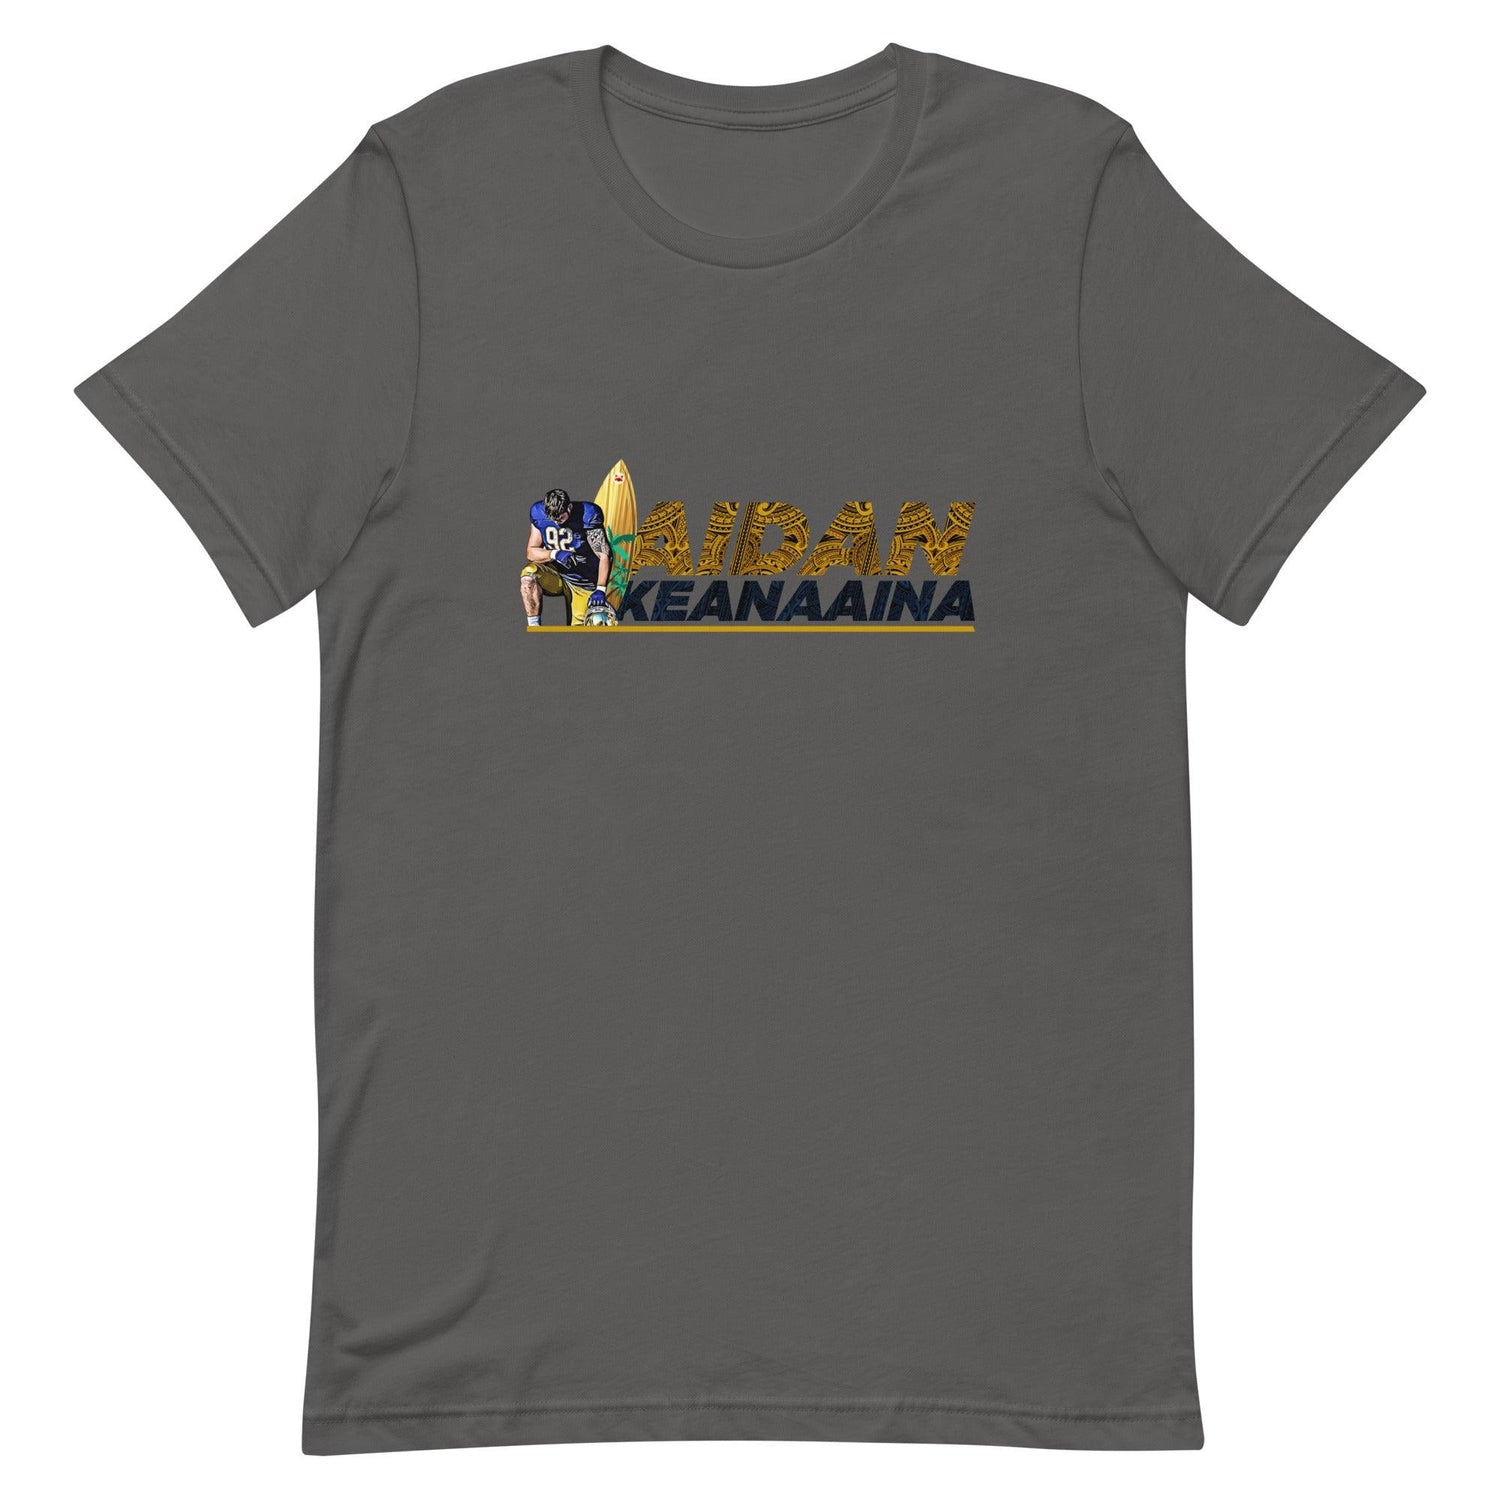 Aidan Keanaaina "Elite" t-shirt - Fan Arch